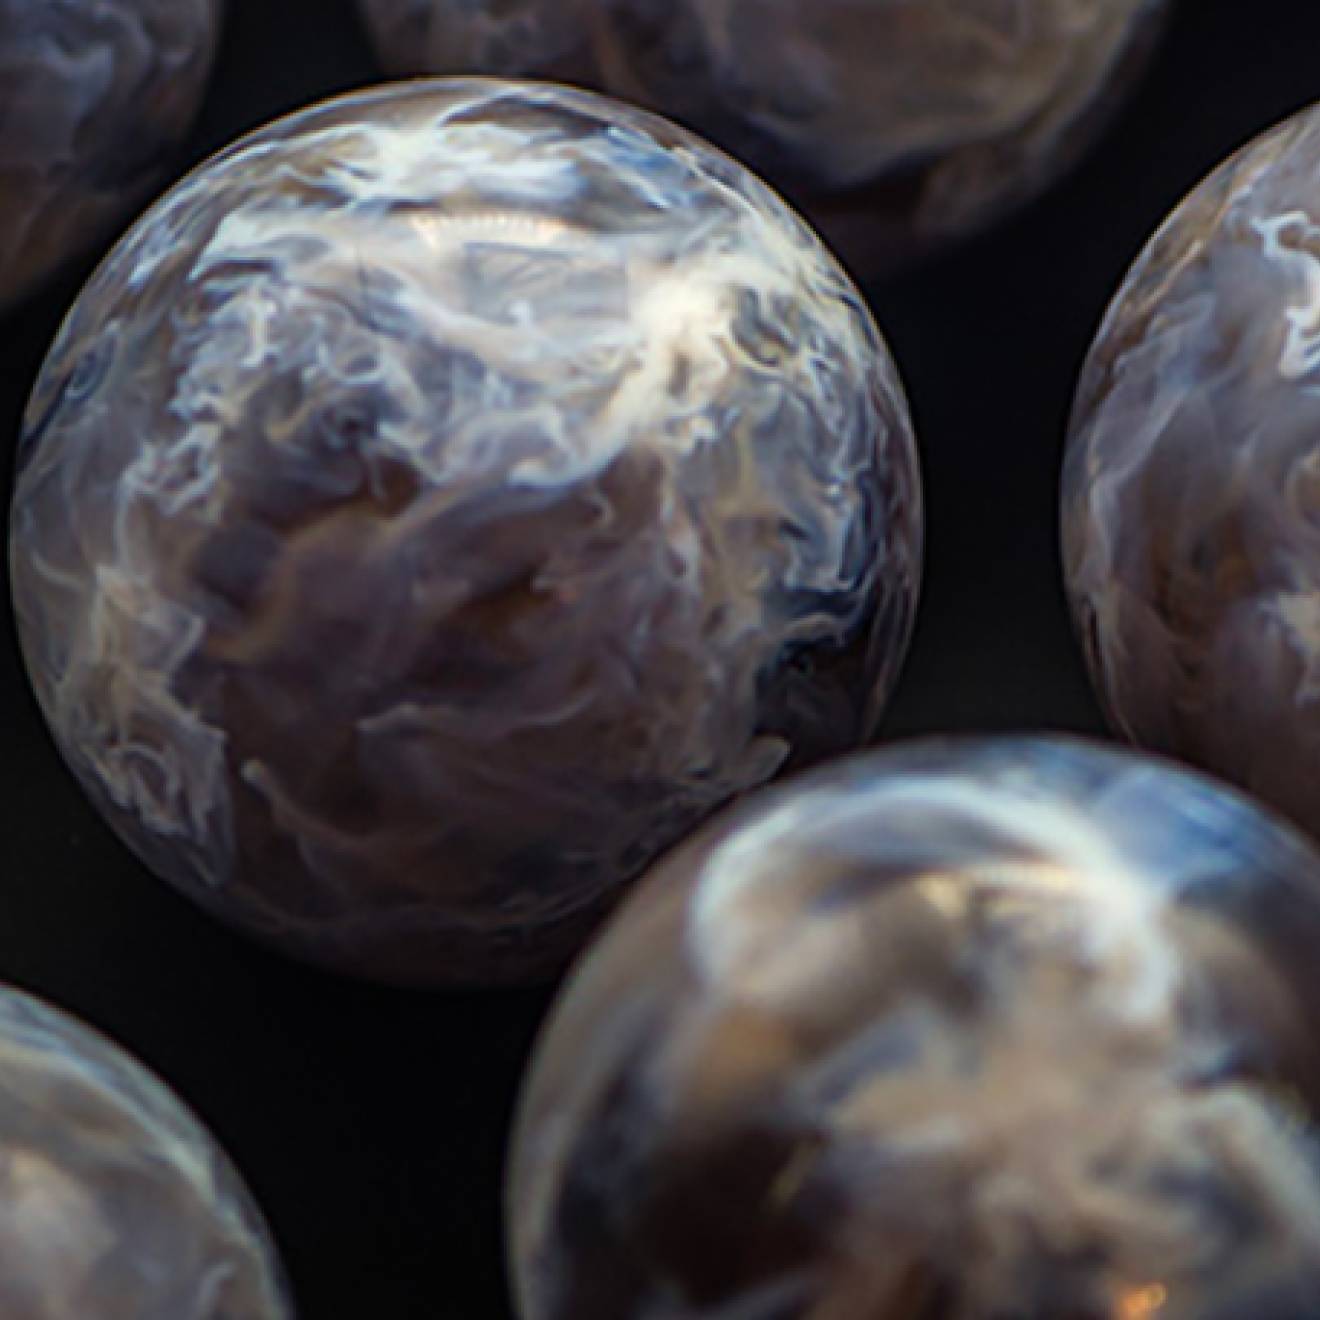 3D-printed stellar nursery spheres